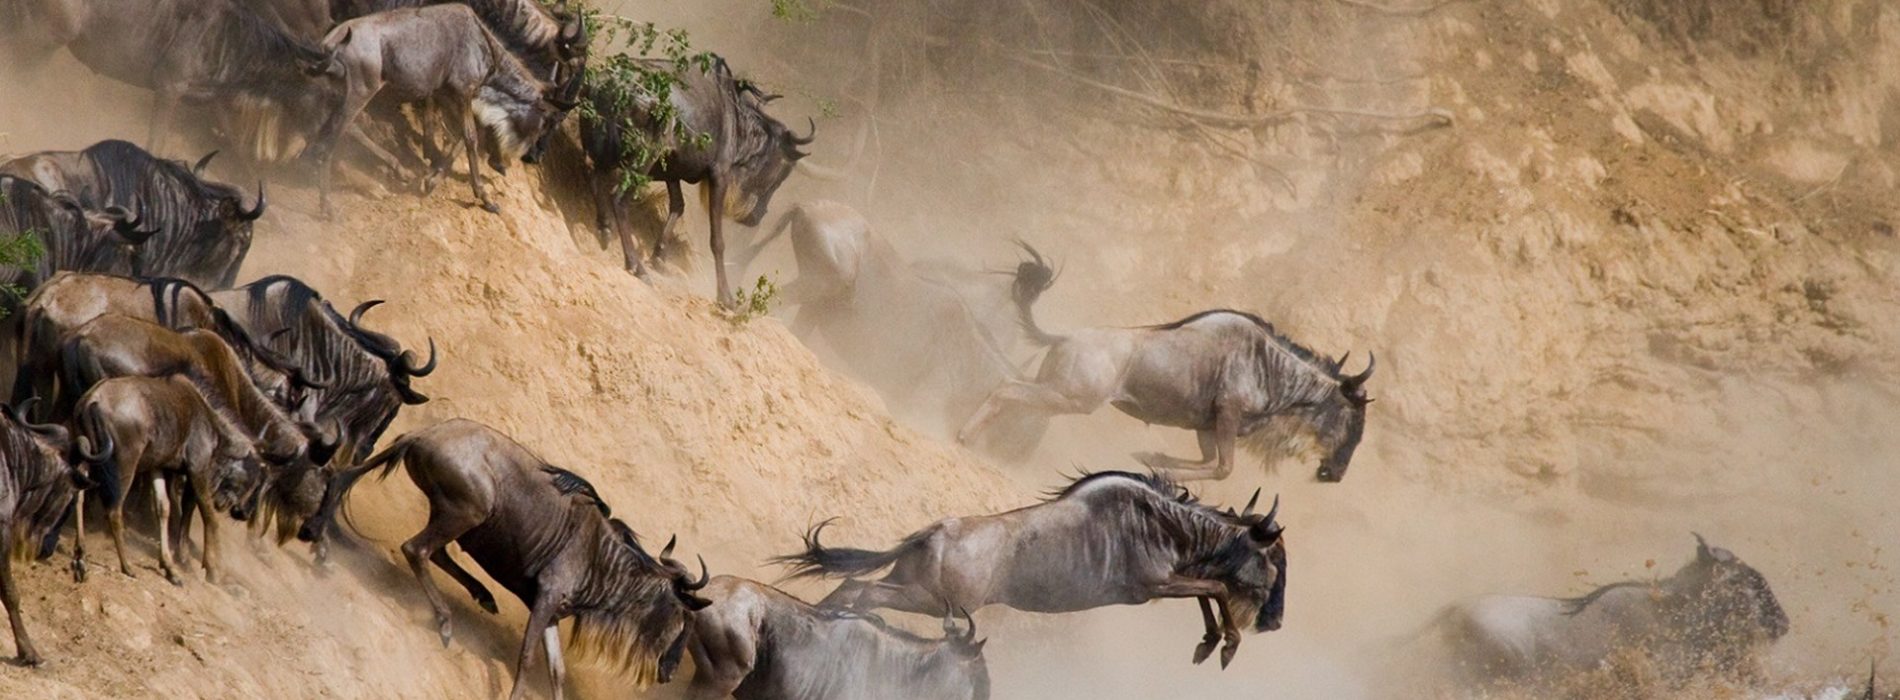 serengeti wildebeest migration